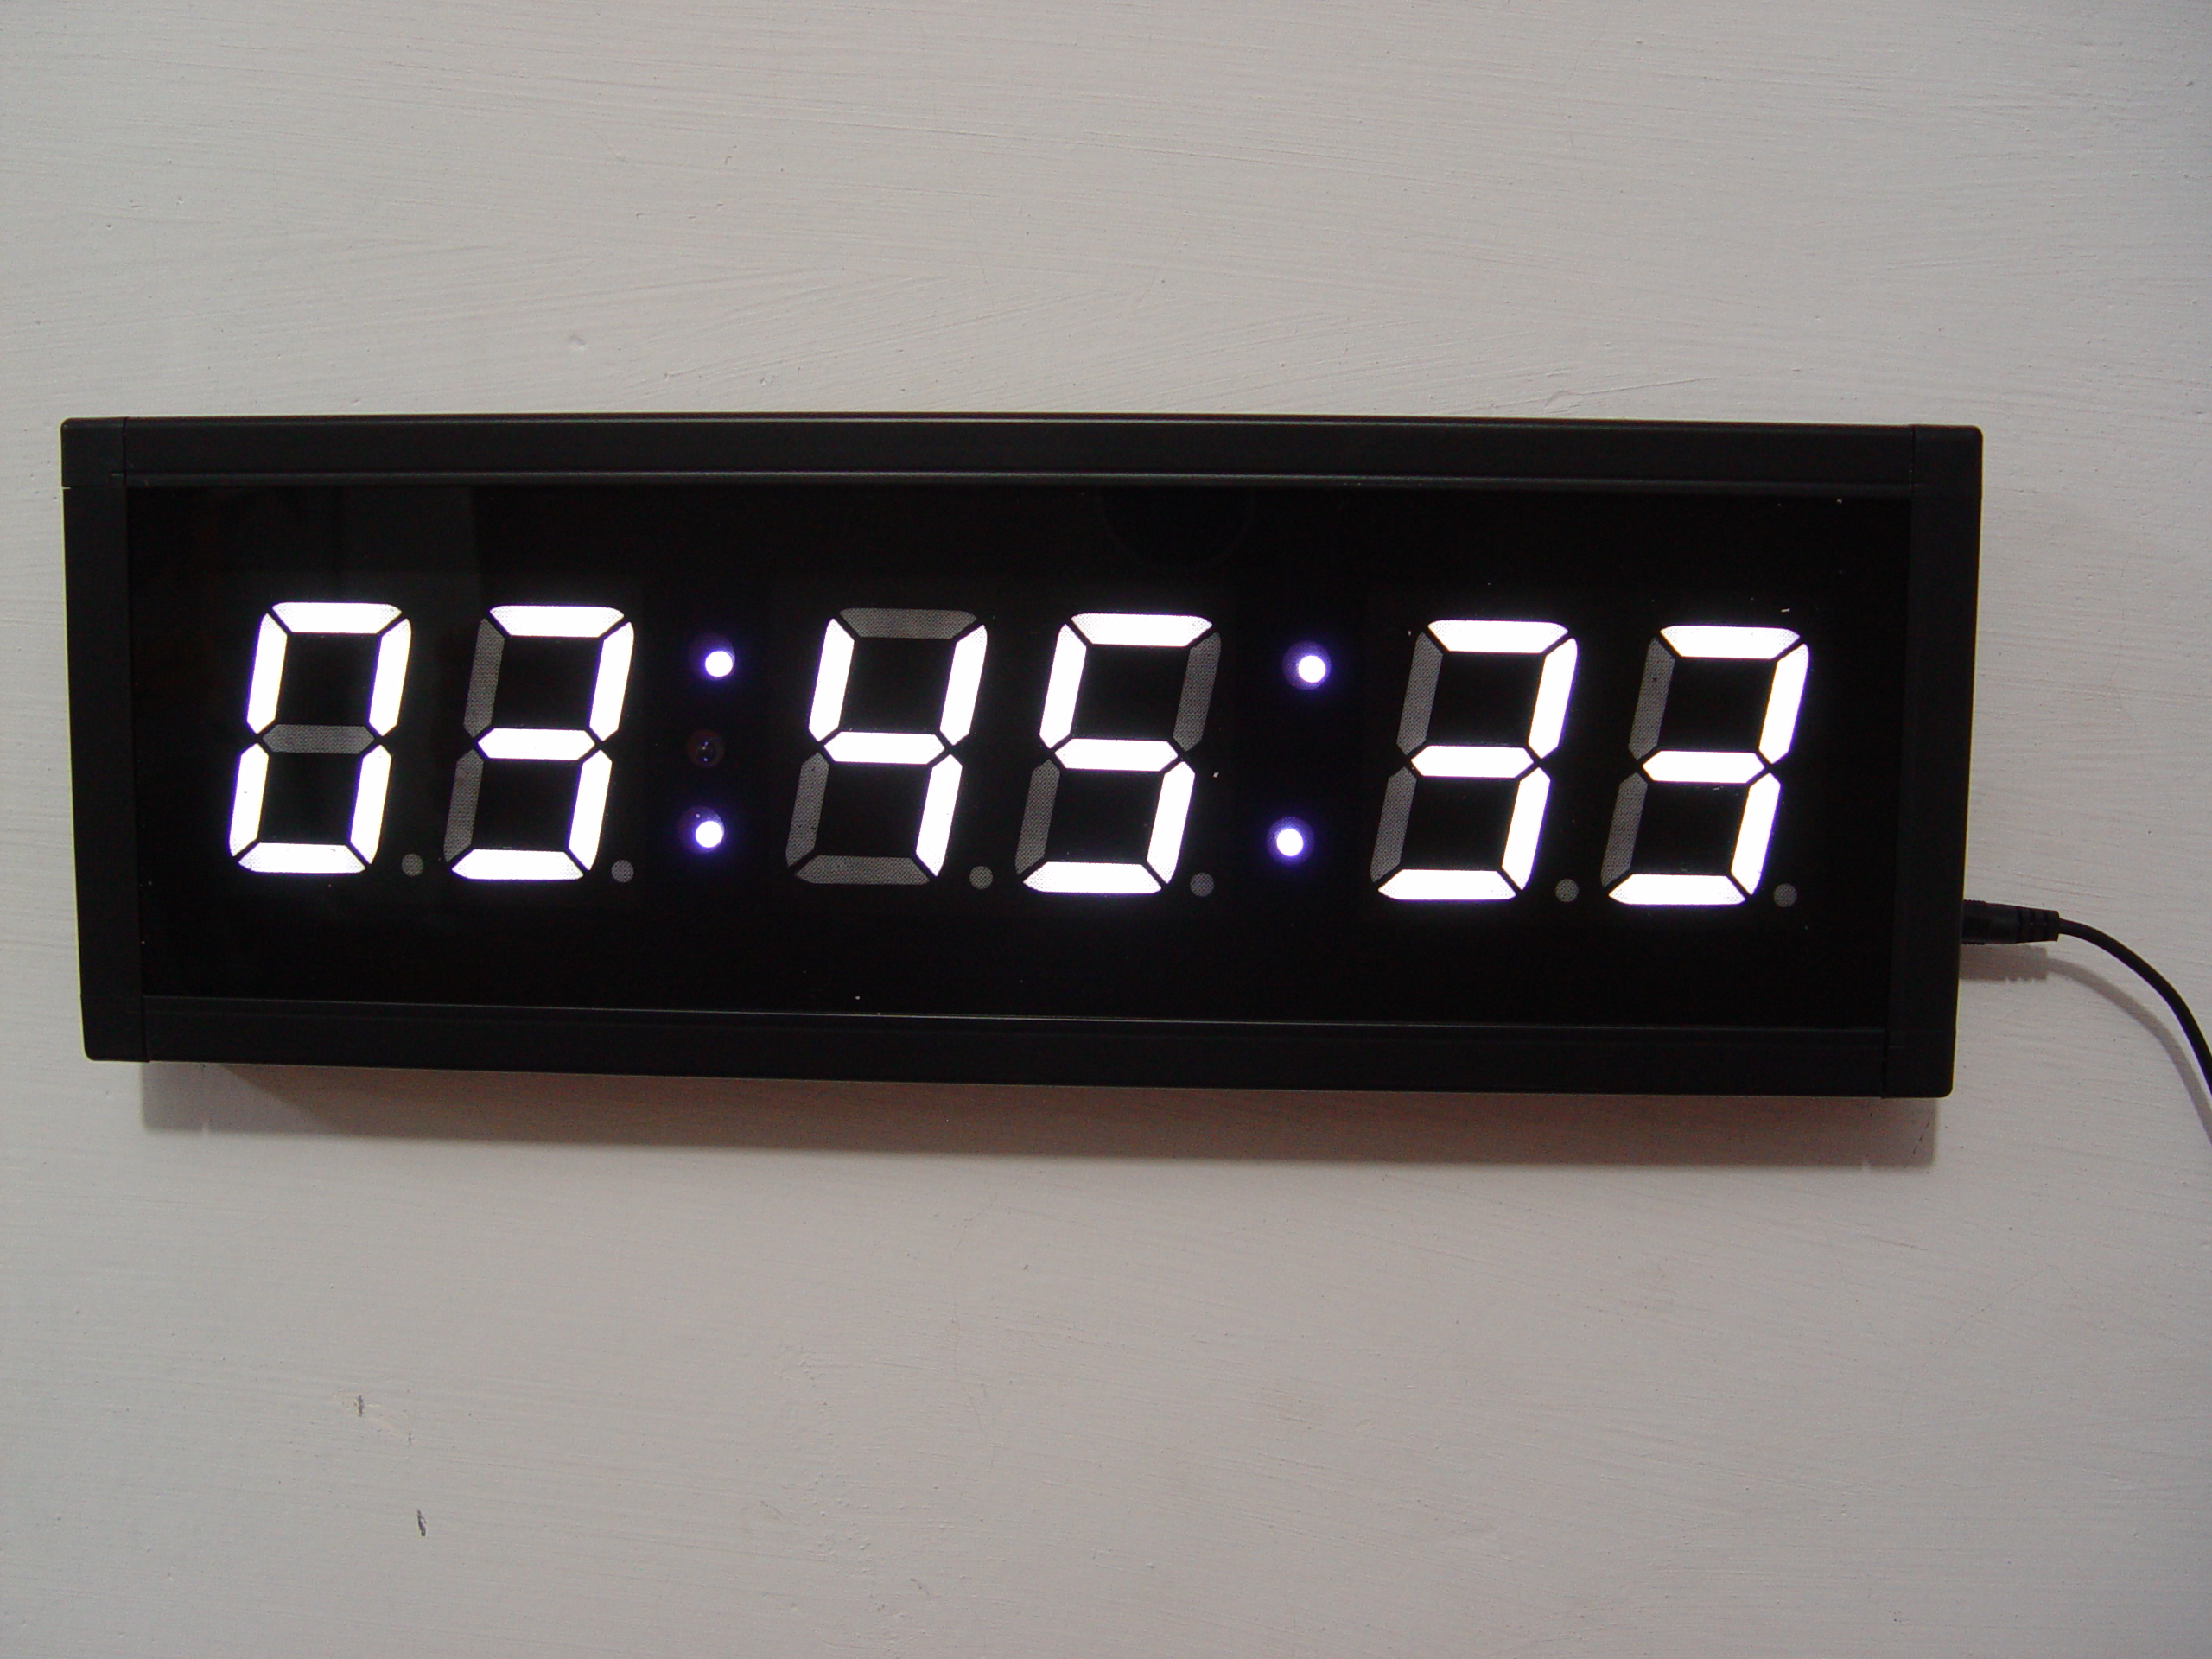 Часы секундомер настенные. Цифровой светодиодный секундомер 12в. Таймер-секундомер цифровой настольный. Электронный цифровой настенный секундомер для бассейна. Электронные часы с таймером.